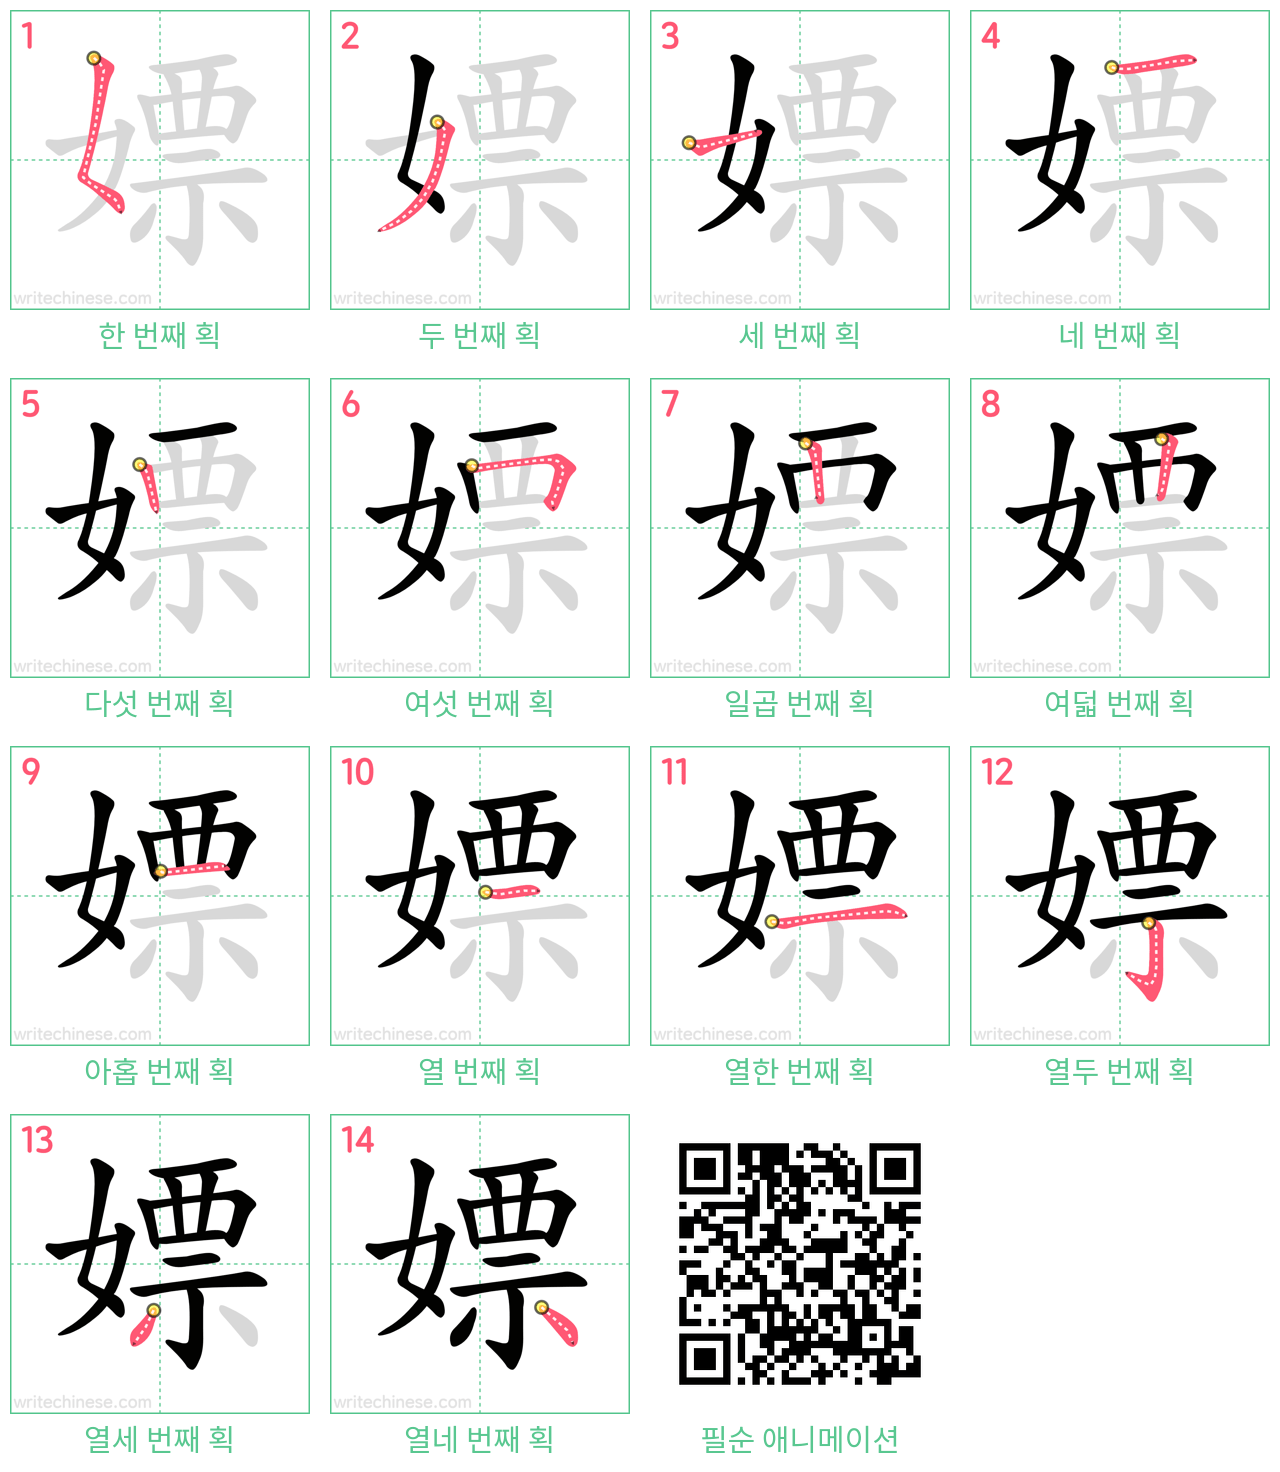 嫖 step-by-step stroke order diagrams